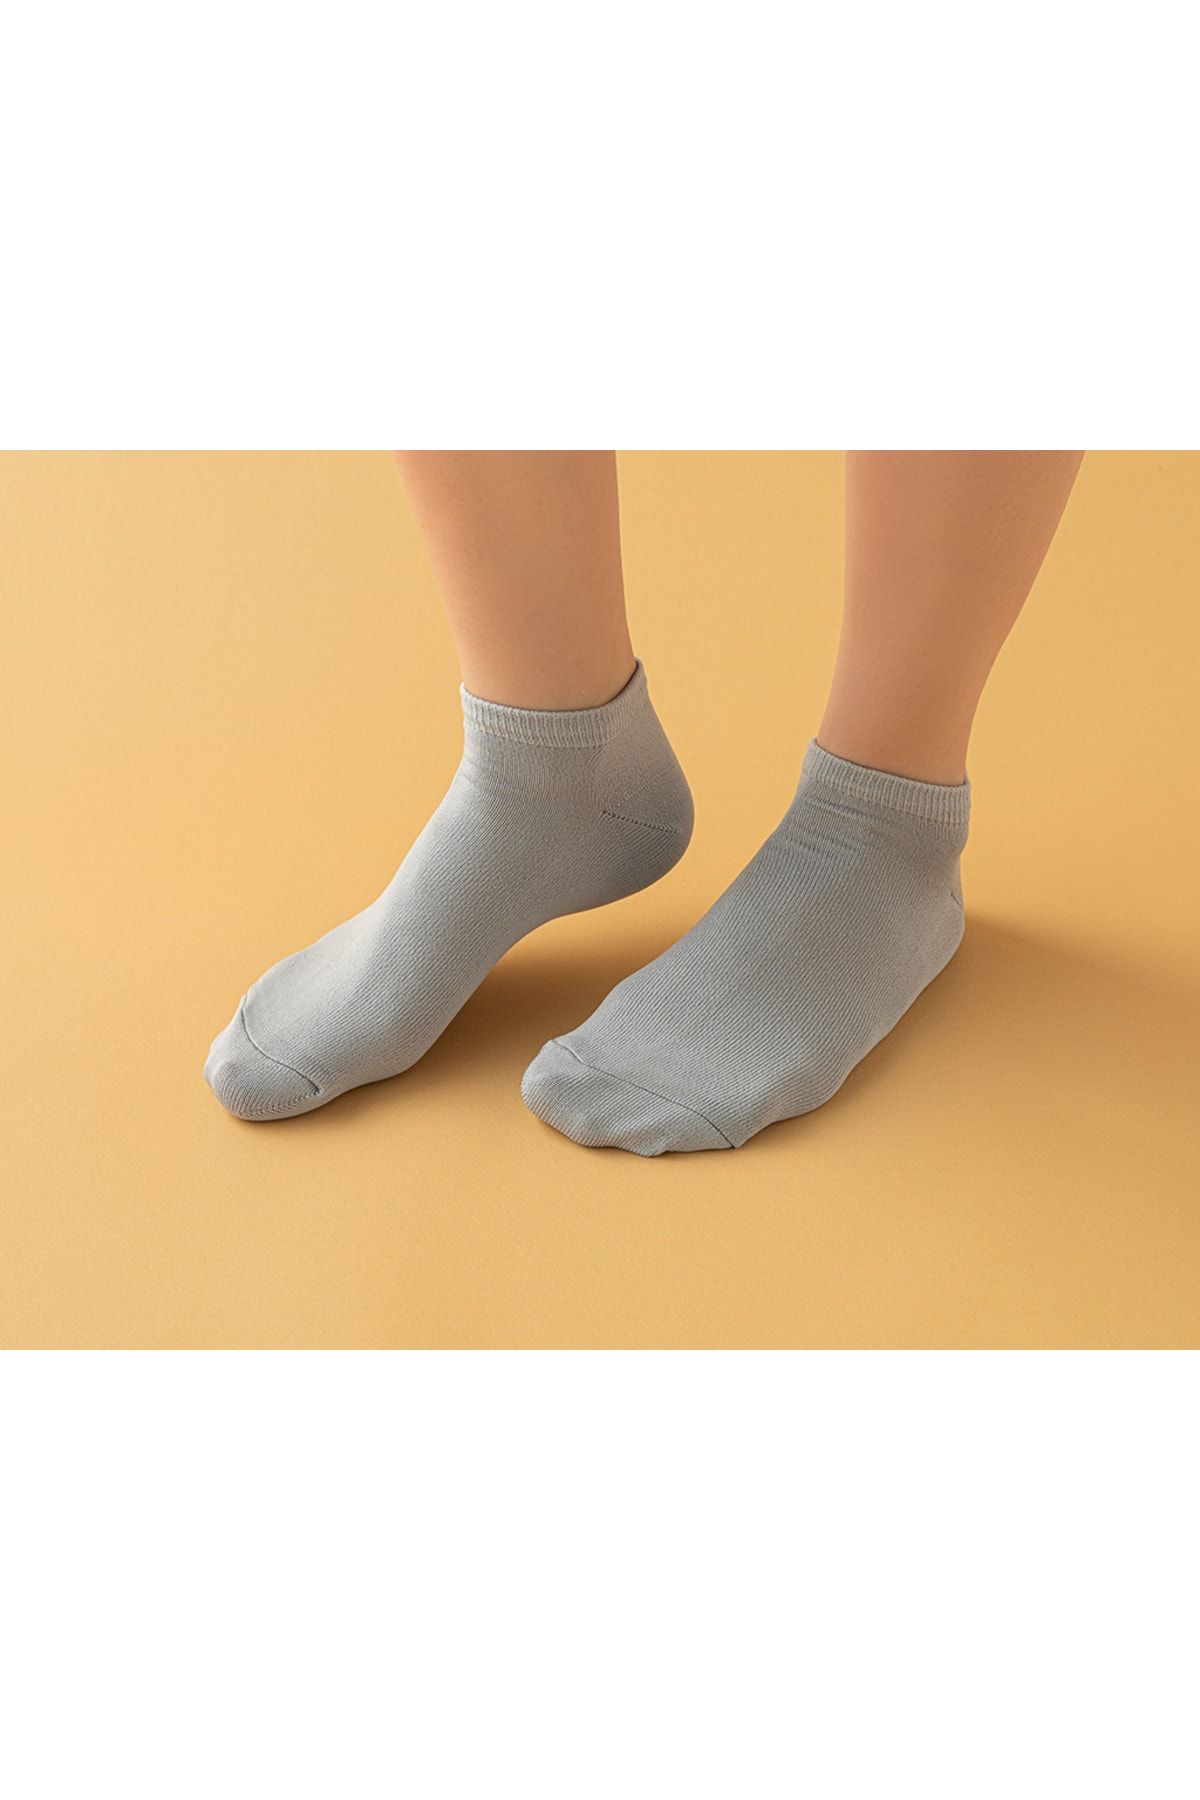 English Home Alvin Kadın Üçlü Patik Çorap 36-40 Siyah-beyaz-gri